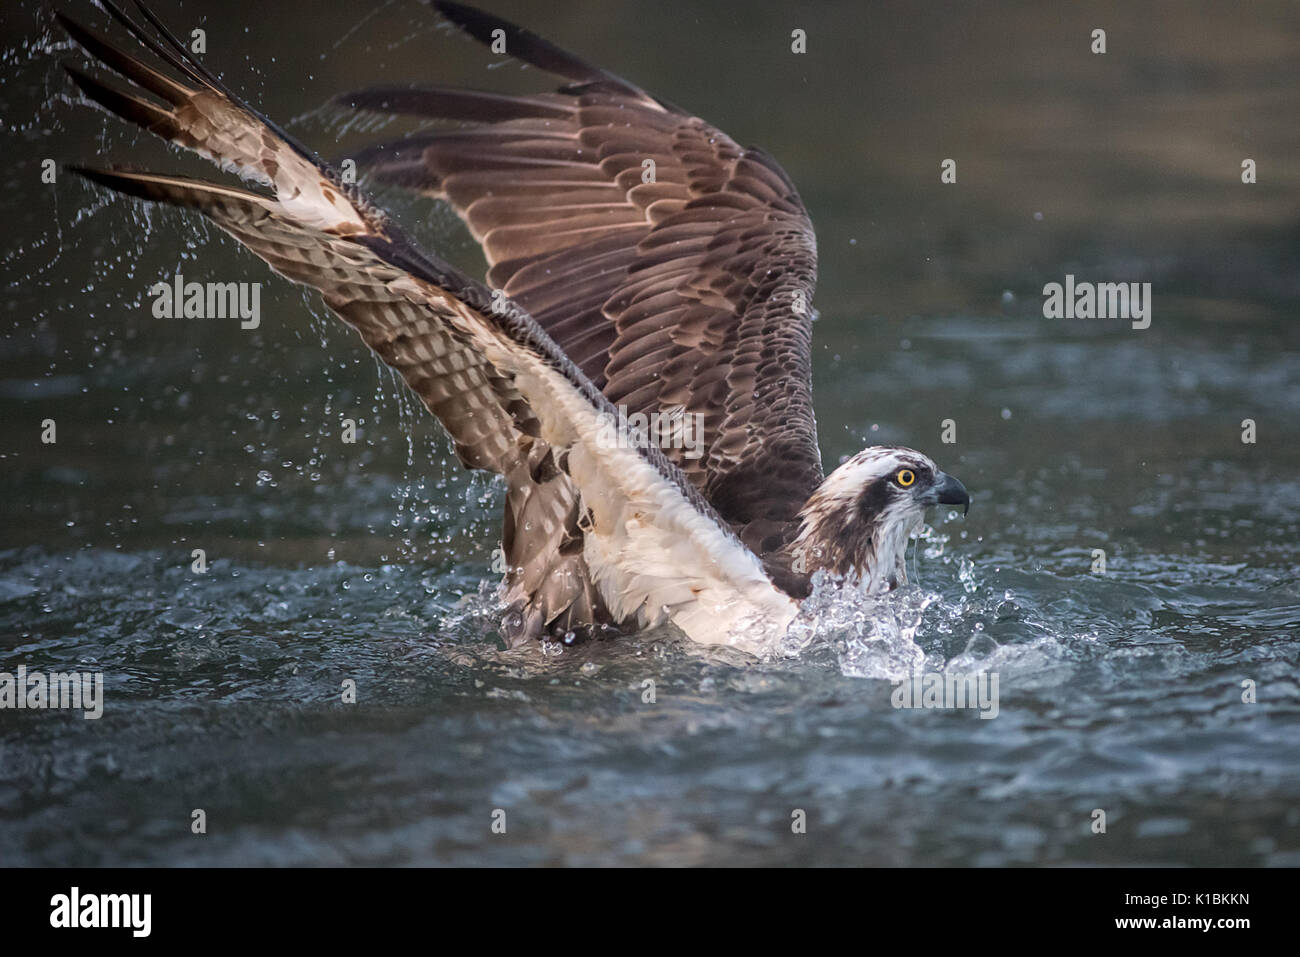 Chiudere fotografia di una pesca osprey tuffi in acqua e per metà immerso Foto Stock